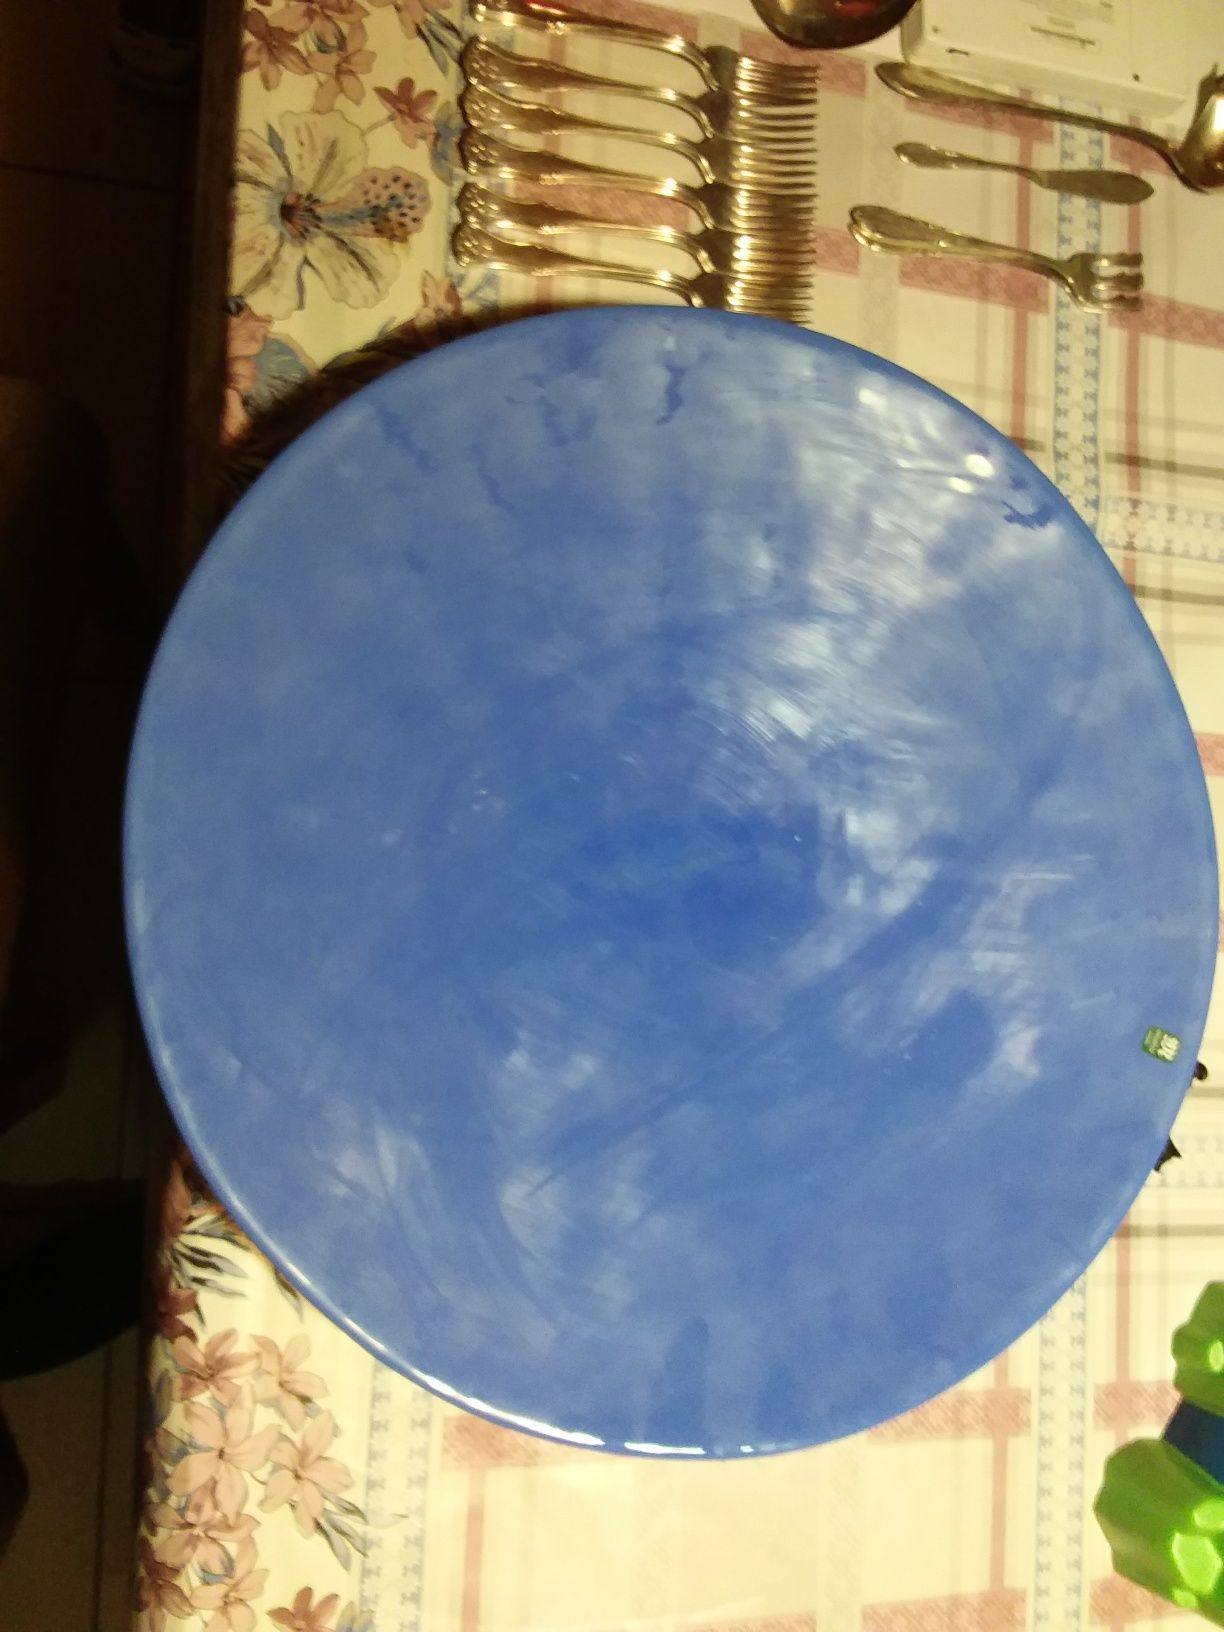 Misa niebieskie szkło Eva englund maleras średnicy 41 cm.